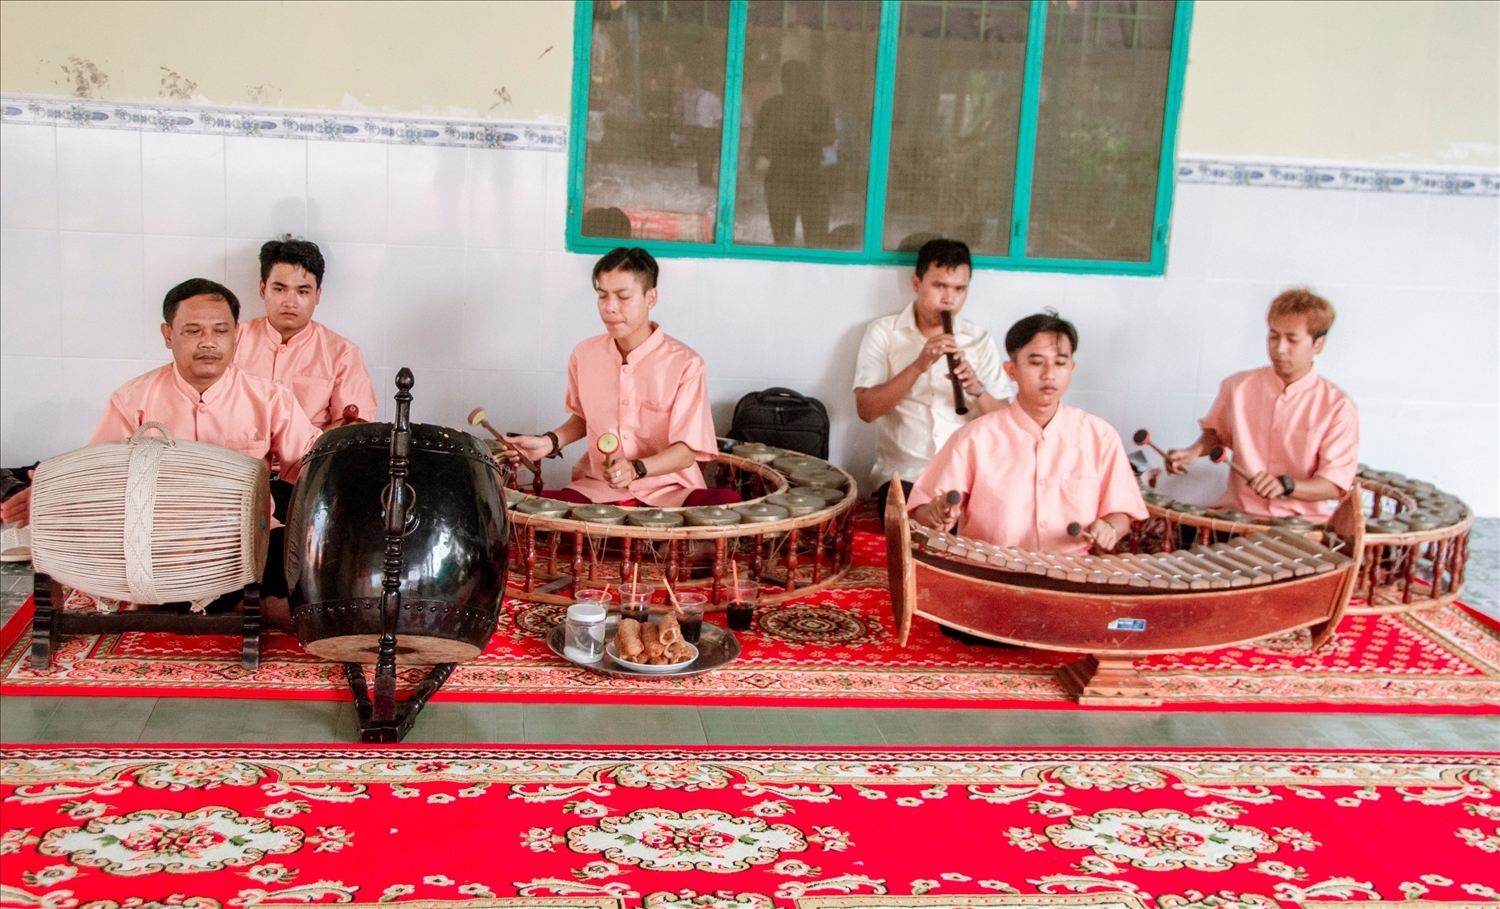 Dàn nhạc ngũ của Hội ĐKSSYN chuyên đi phục vụ miễn phí vào các dịp lễ tết của đồng bào Khme